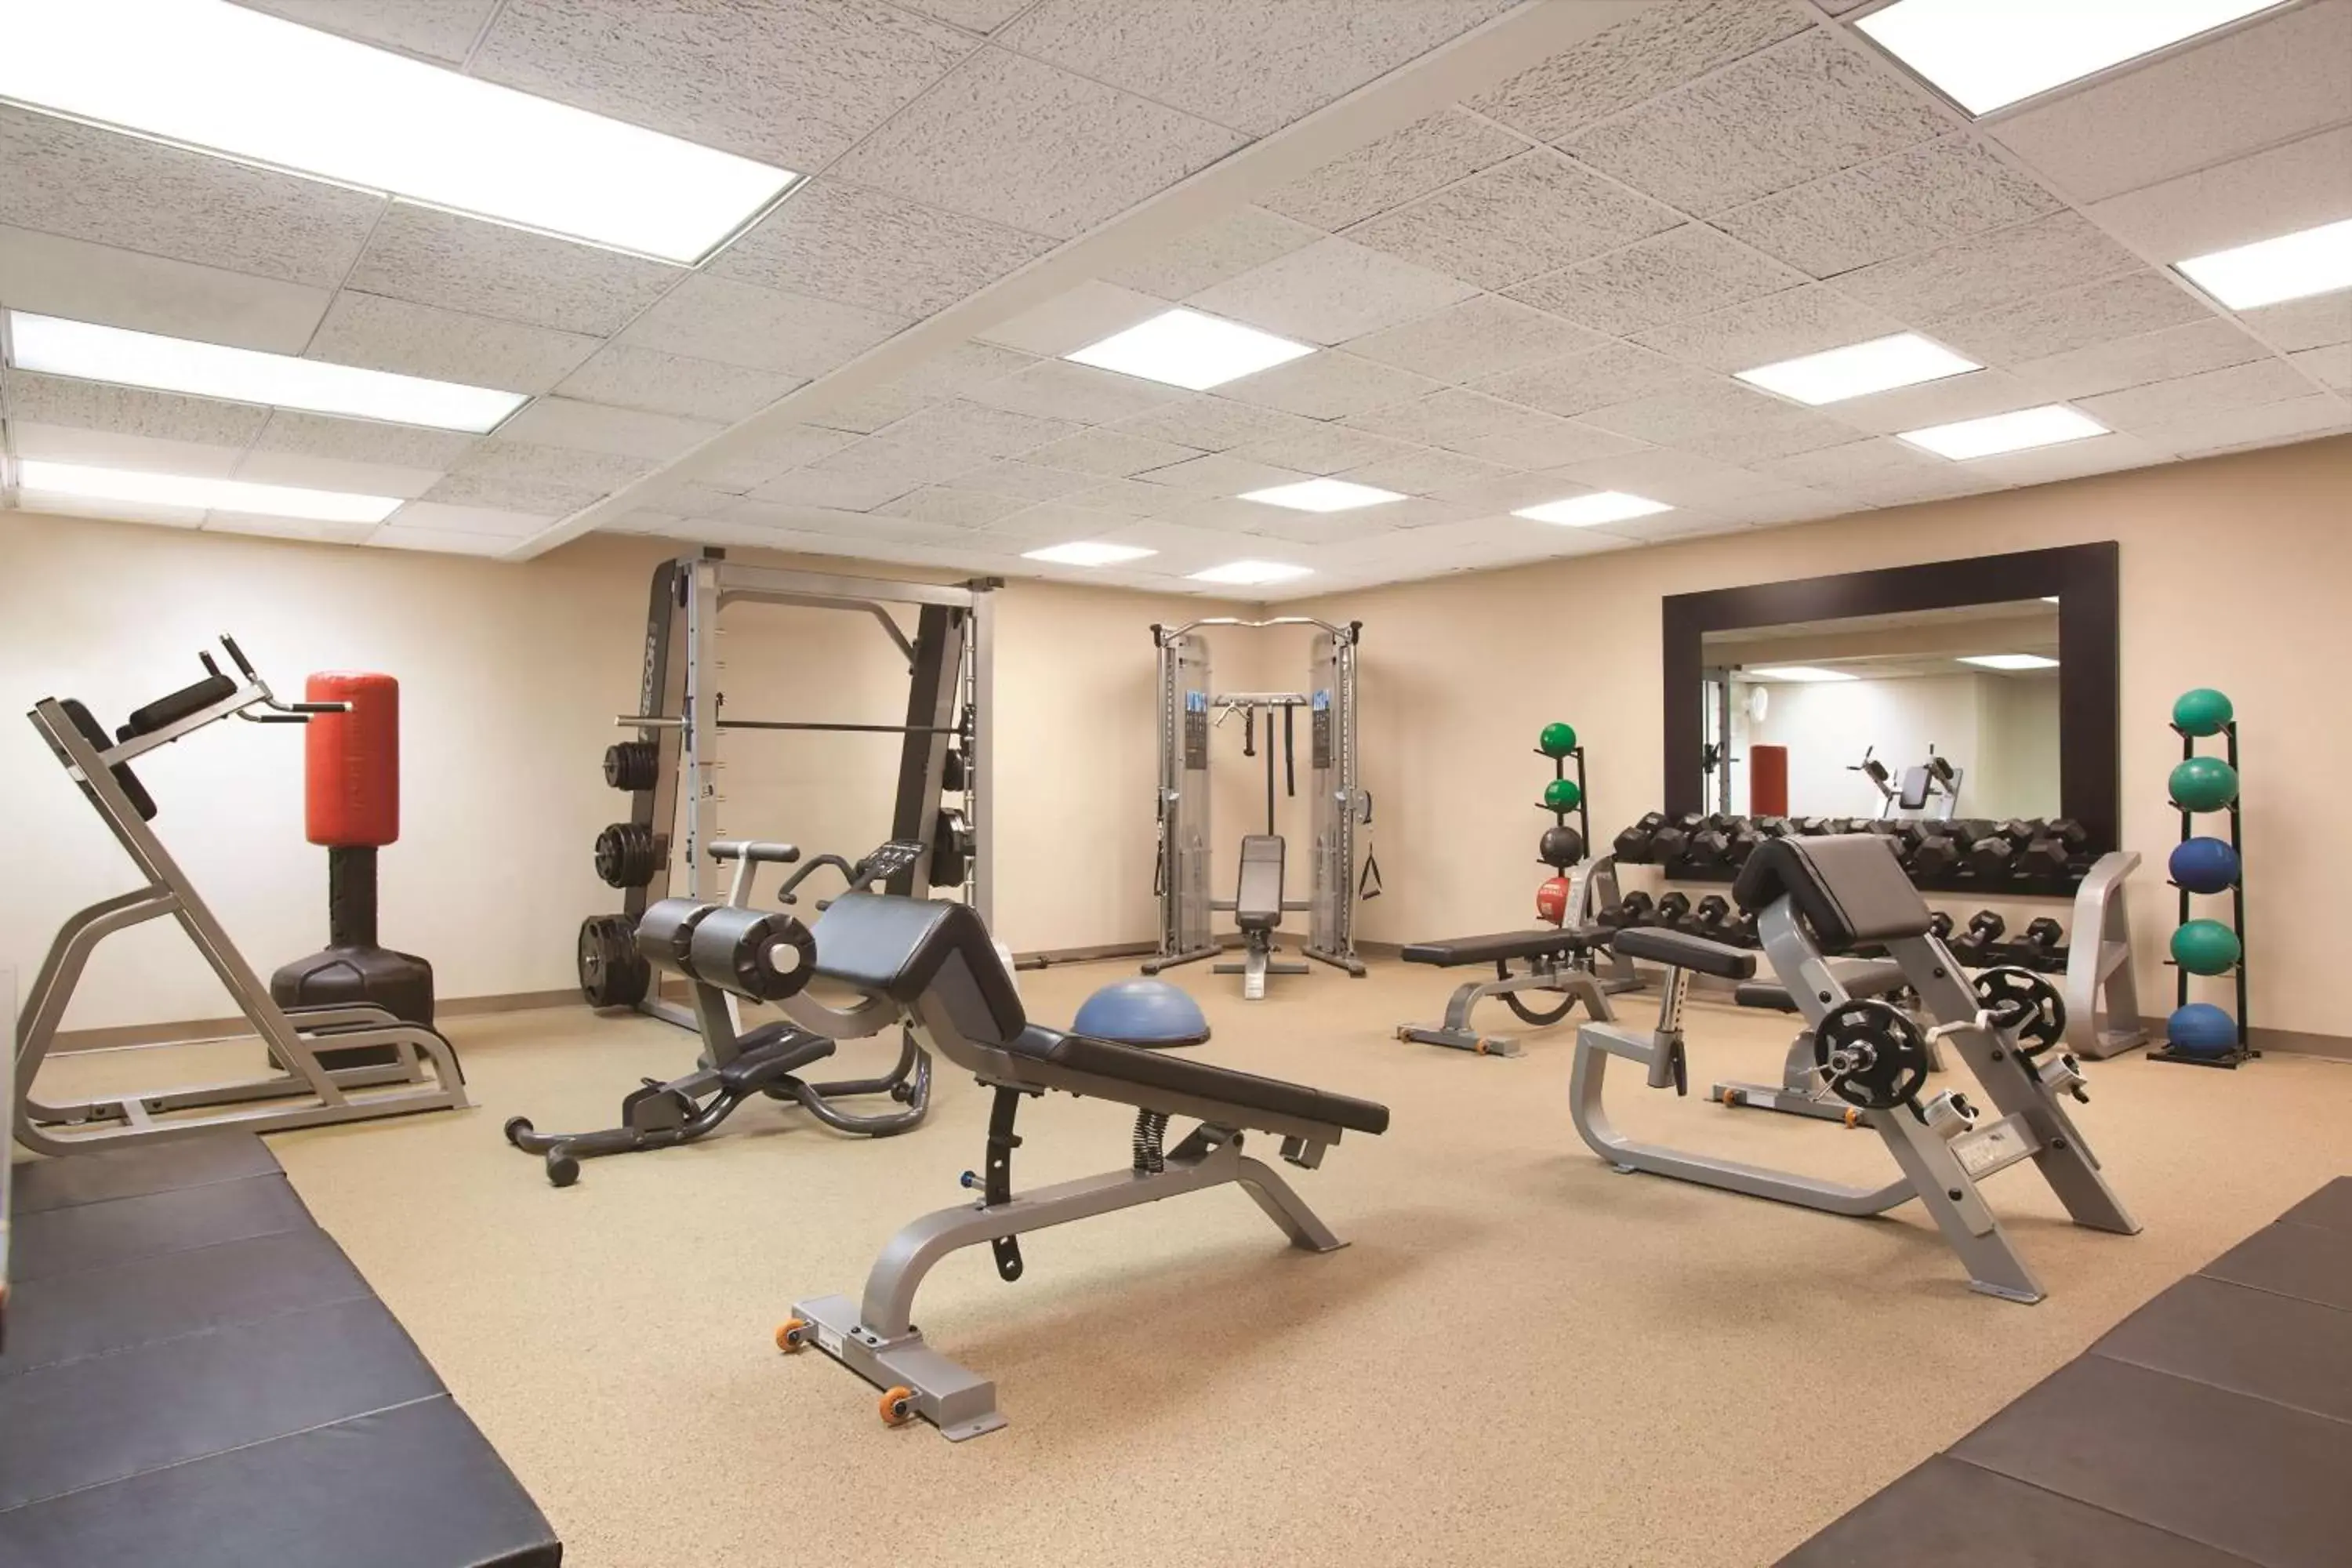 Fitness centre/facilities, Fitness Center/Facilities in Hilton Boston Dedham